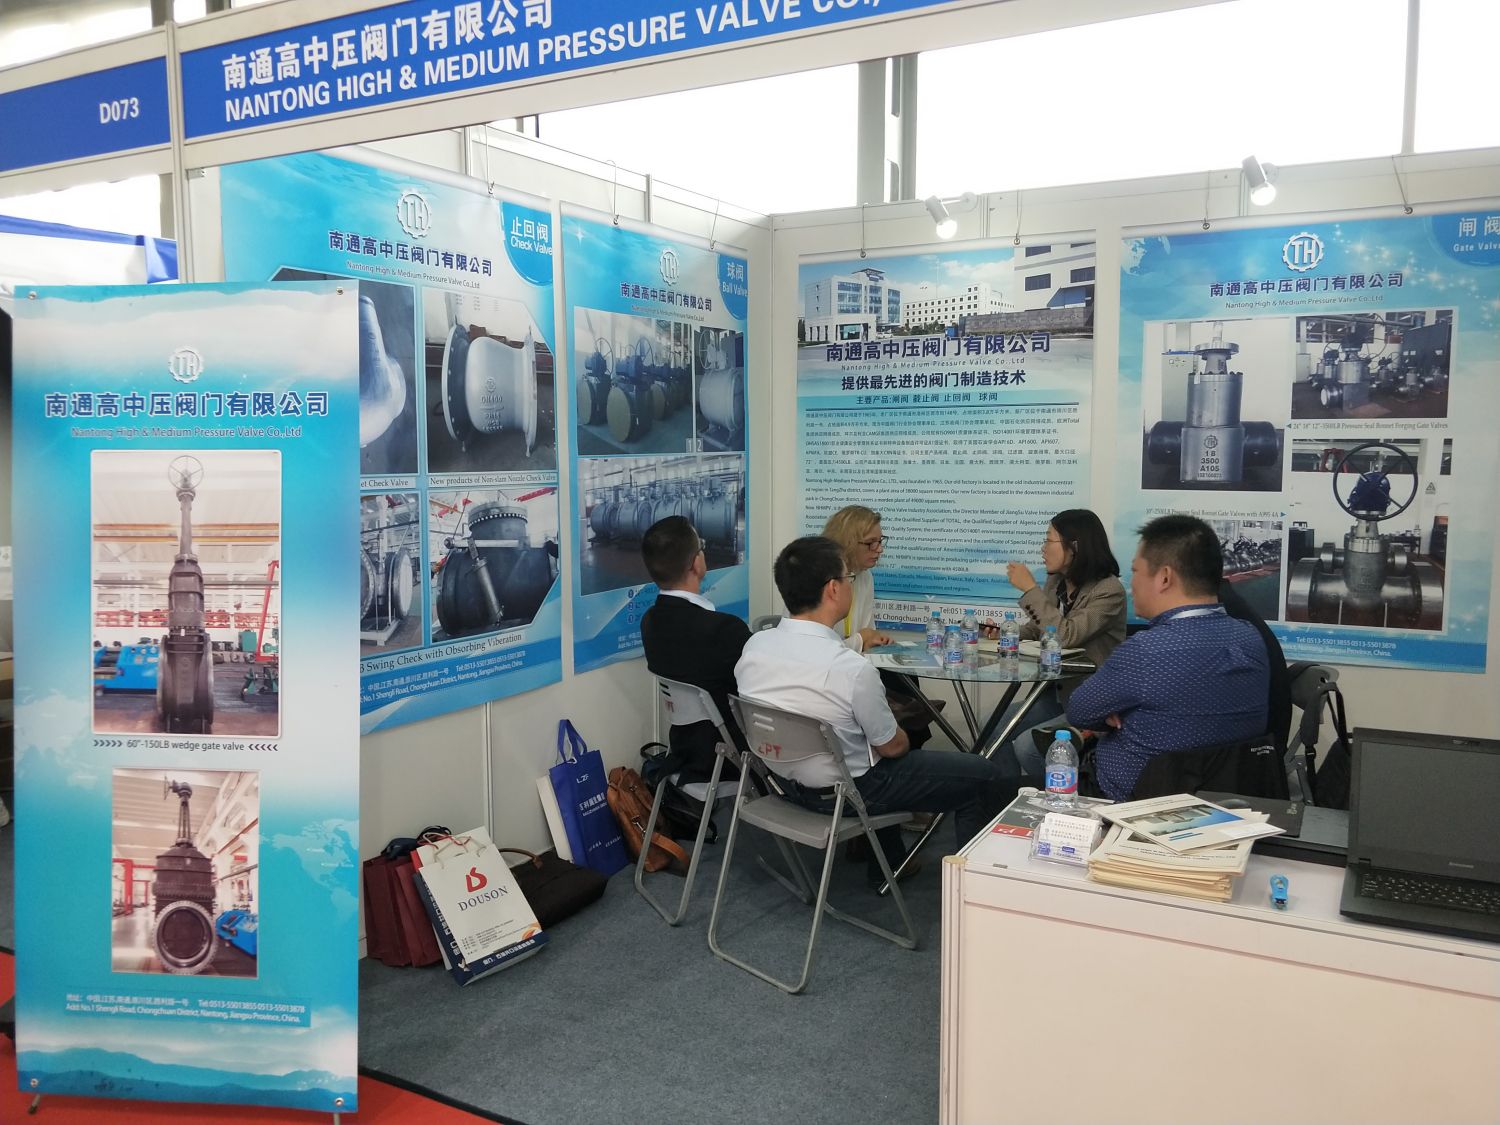 Nantong High & Medium Pressure Valve nahm 2018 an der 9. Internationalen Fluidmaschinenausstellung in China (Shanghai) teil